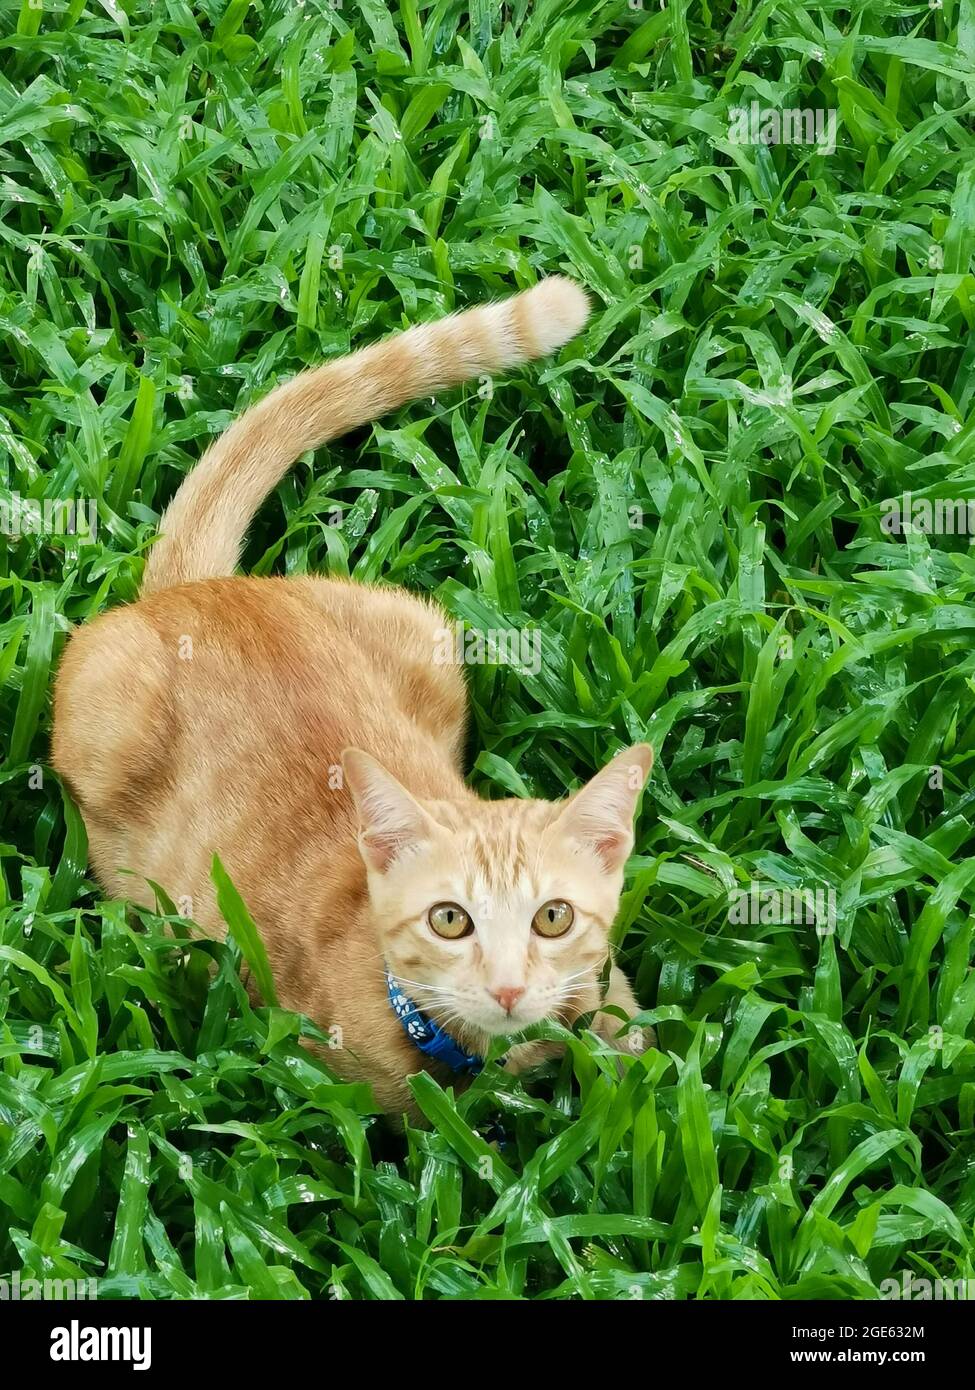 Un chat orange portant un col bleu assis sur de l'herbe verte et regardant l'appareil photo. Banque D'Images